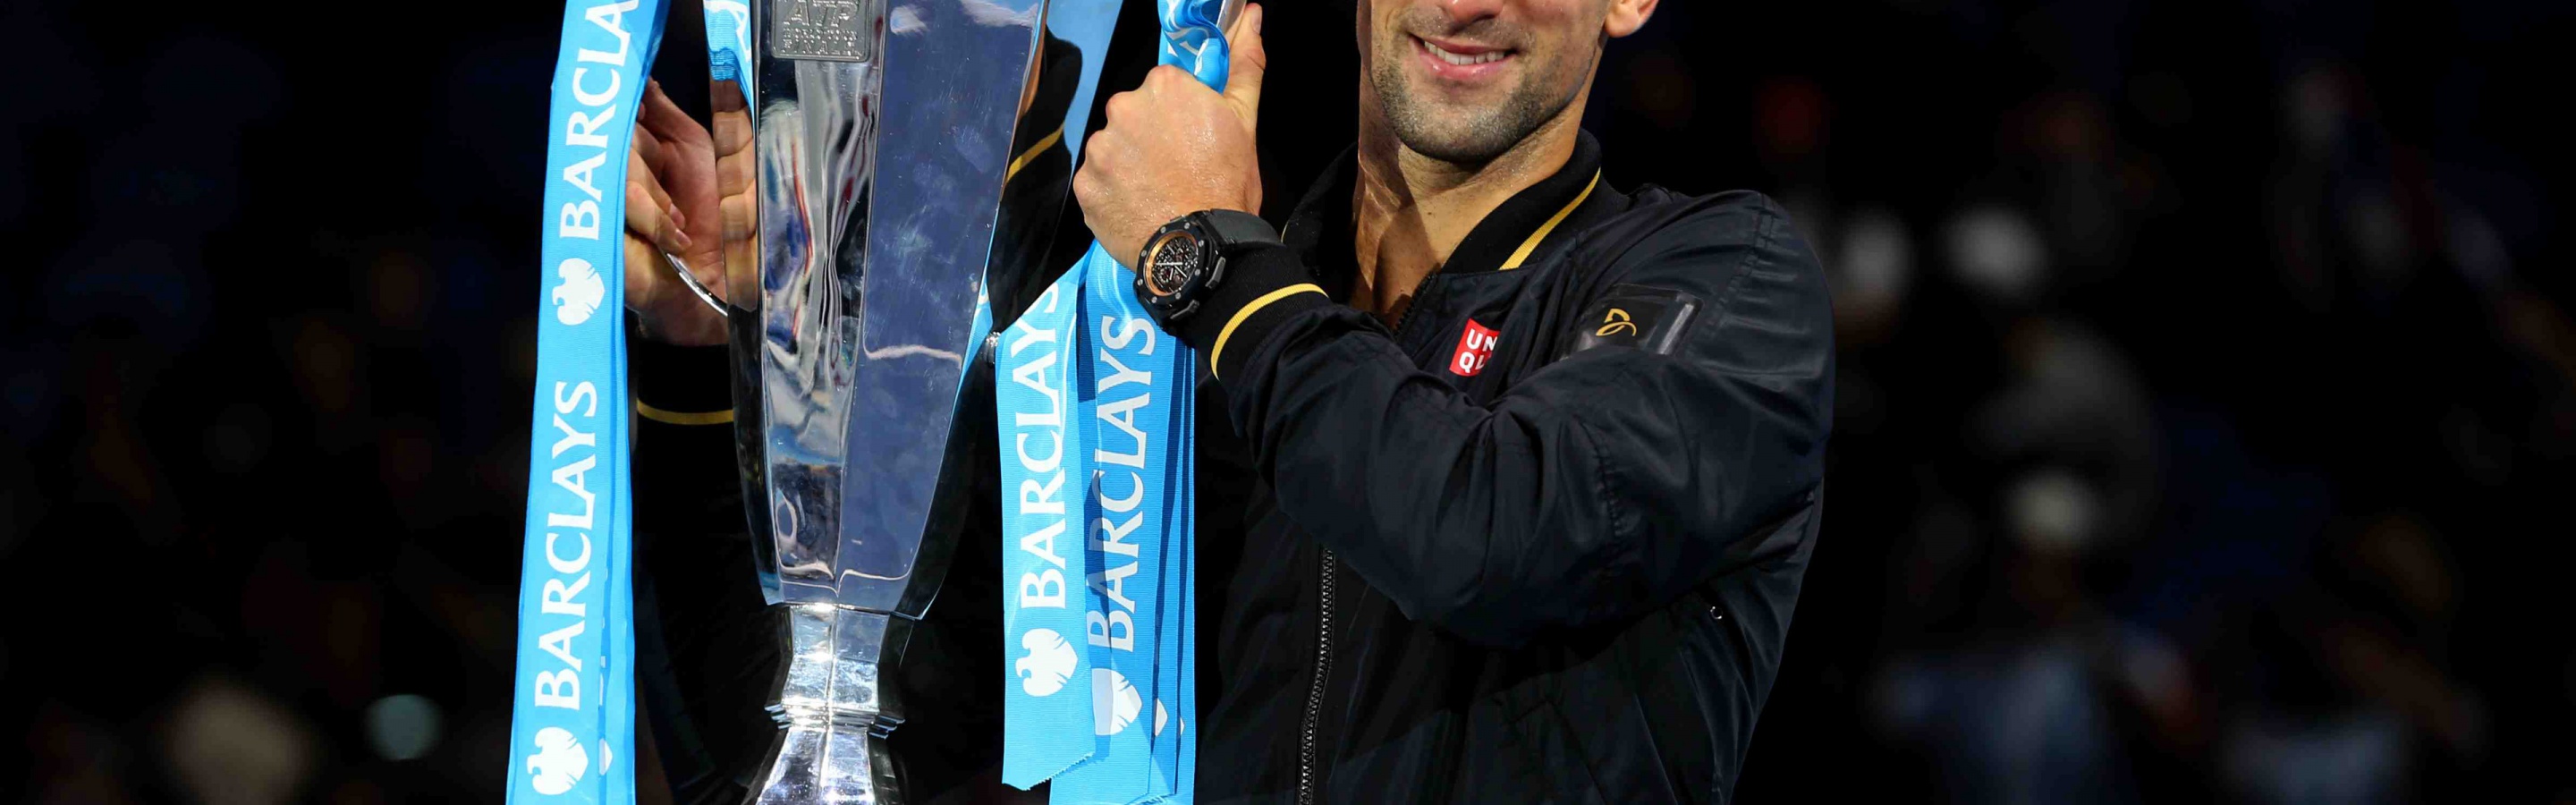 Novak Djokovic With The Trophy